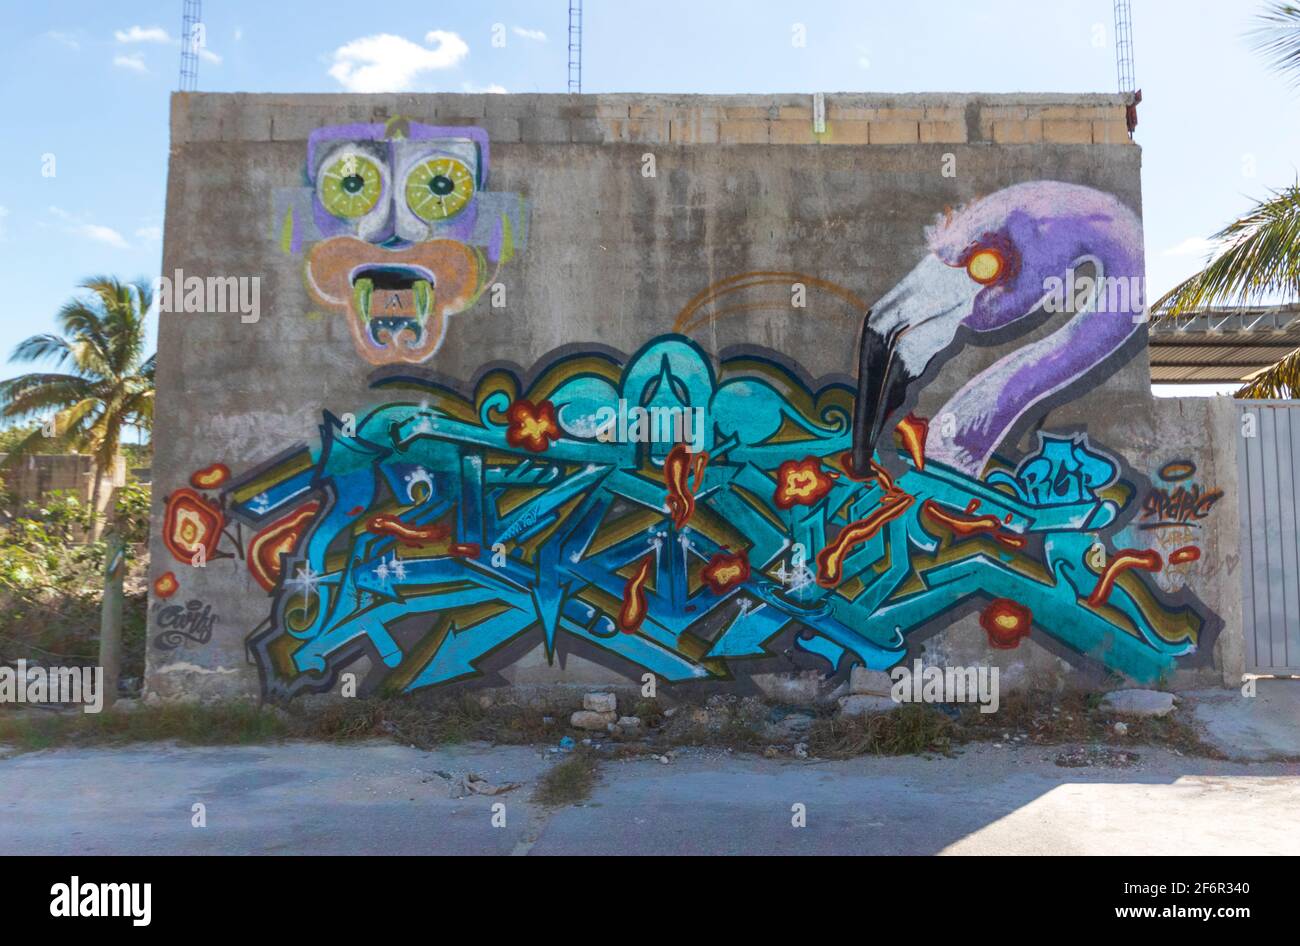 Street Art in Mexico - UN mur décoré de graffitis, avec des mots stylisés et un flamango violet Banque D'Images